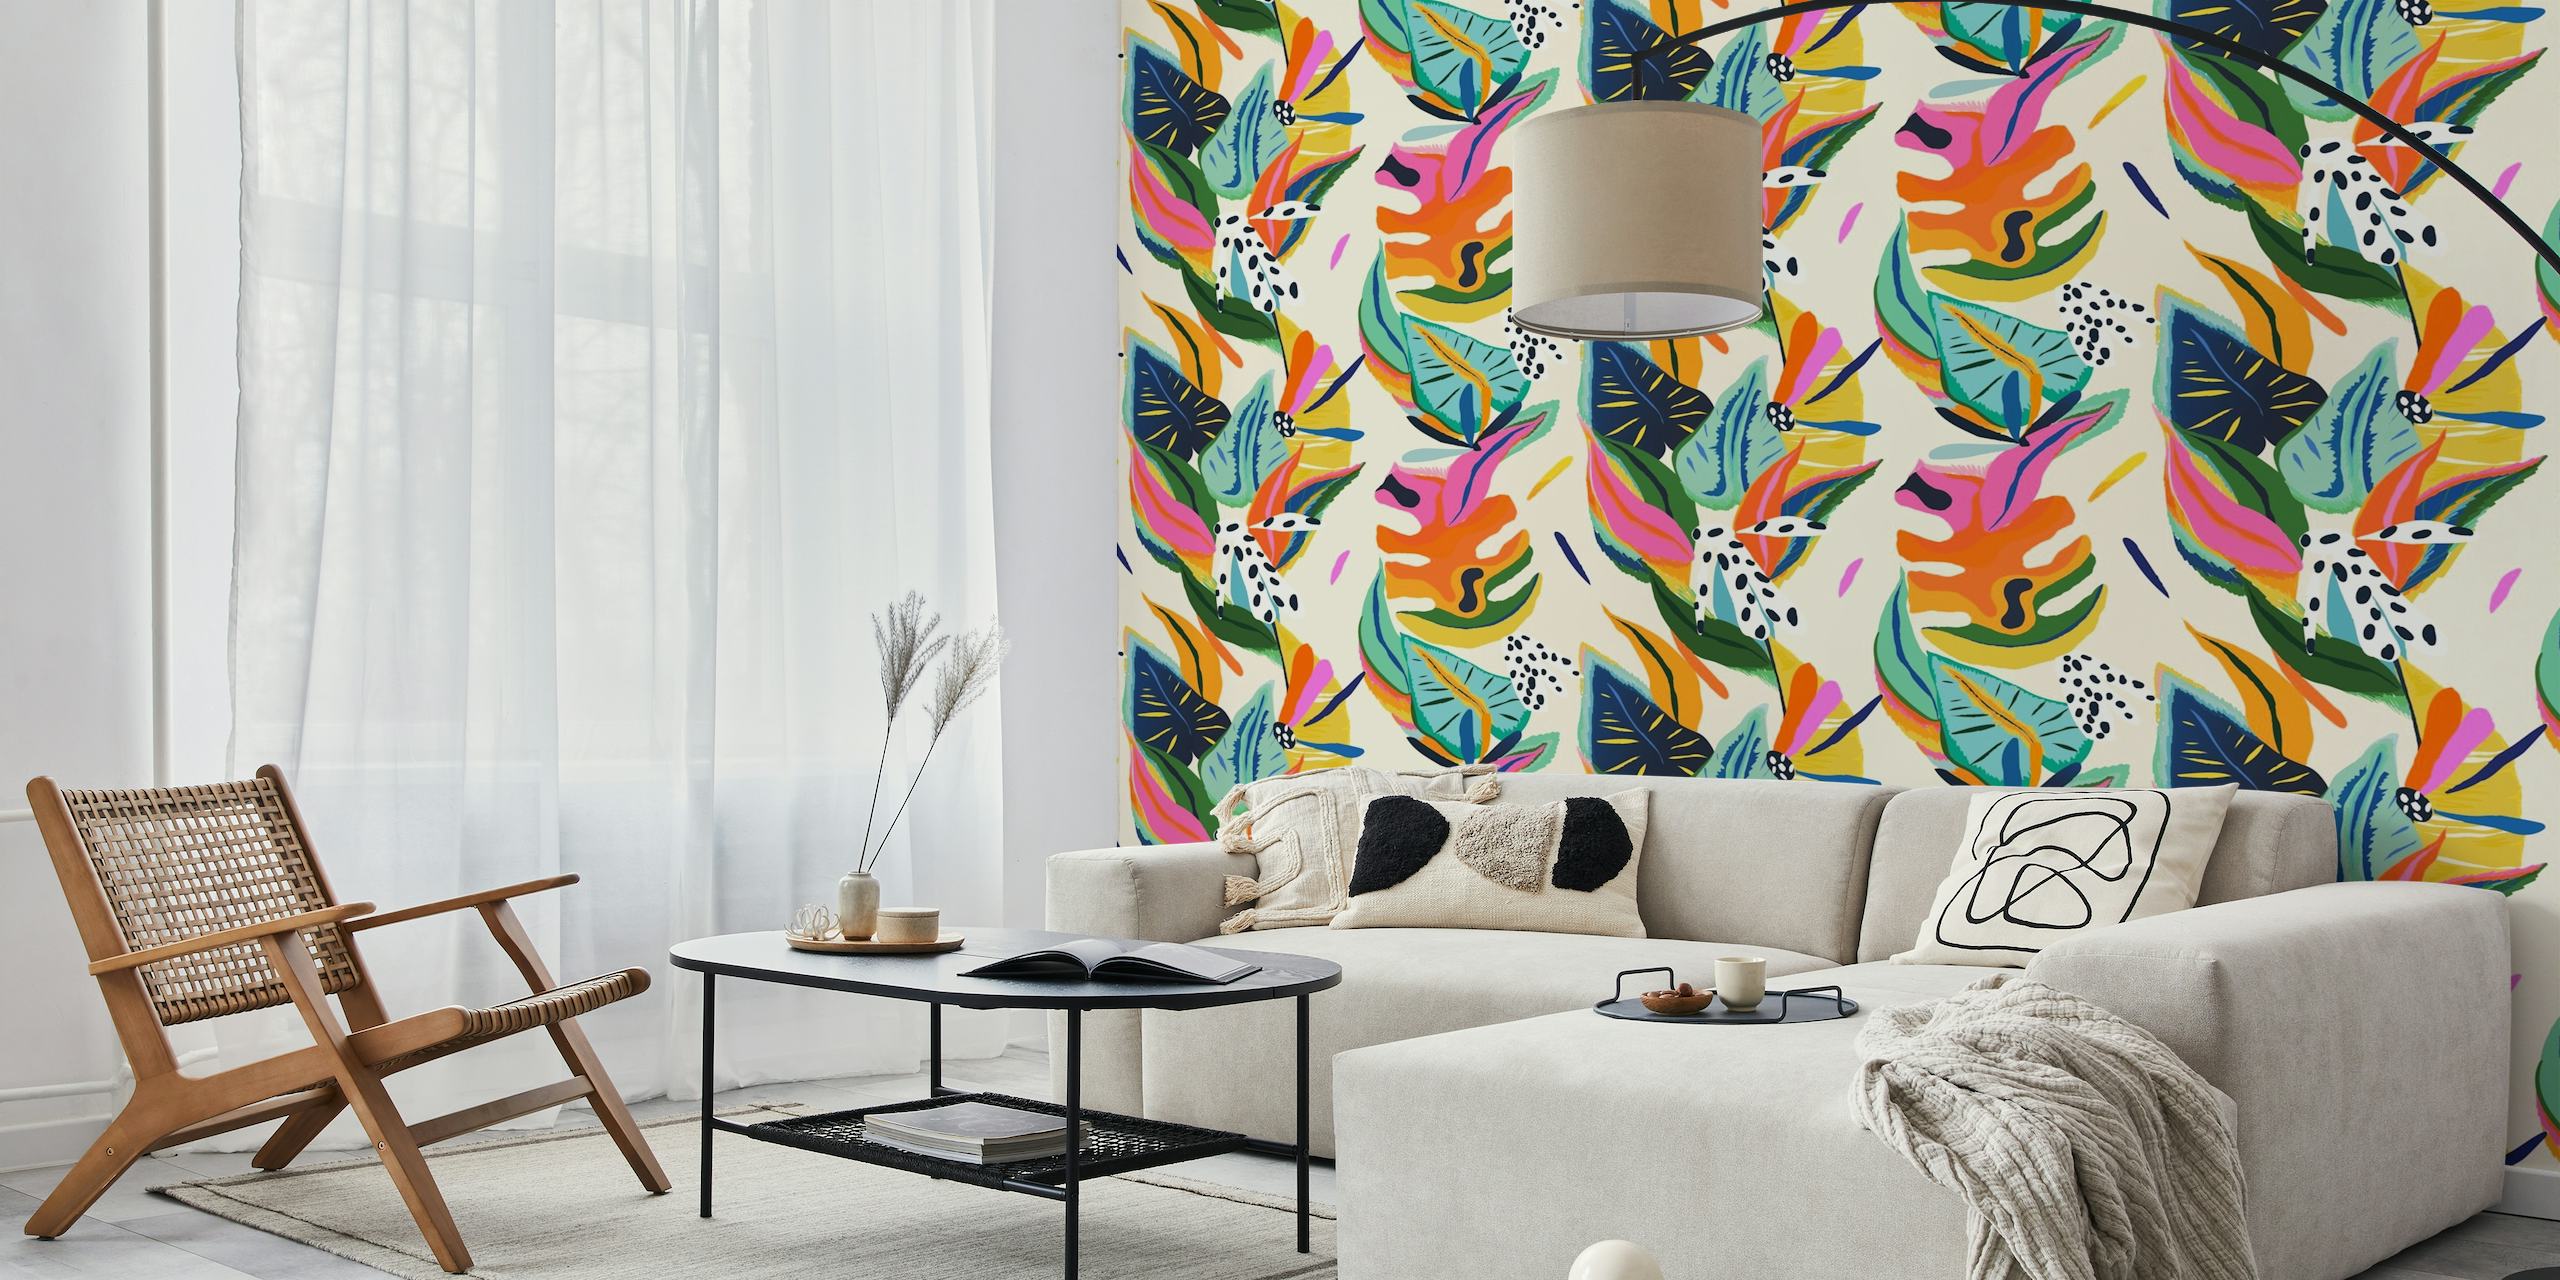 Mural de pared de jungla exótica y moderna y vibrante con colorido follaje tropical y mariposas